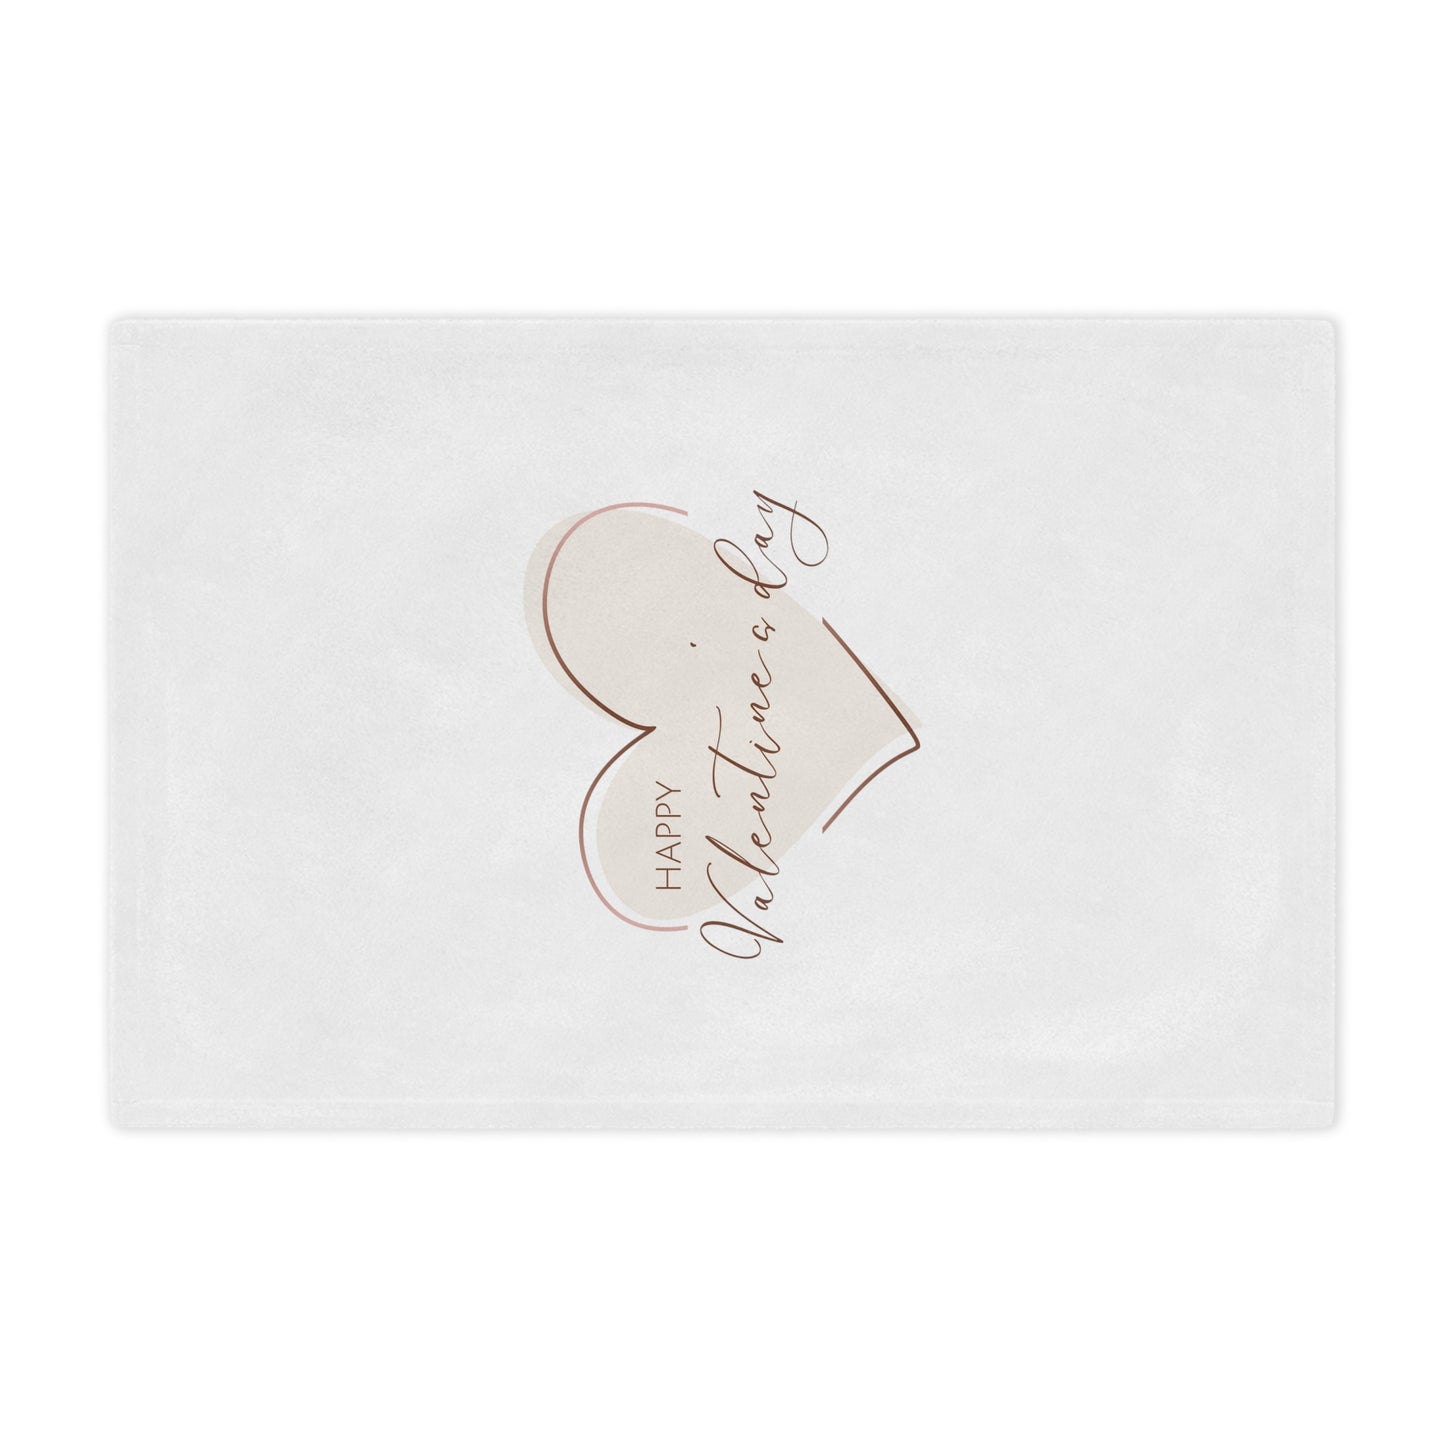 Happy Valentine inside Heart Printed Velveteen Minky Blanket